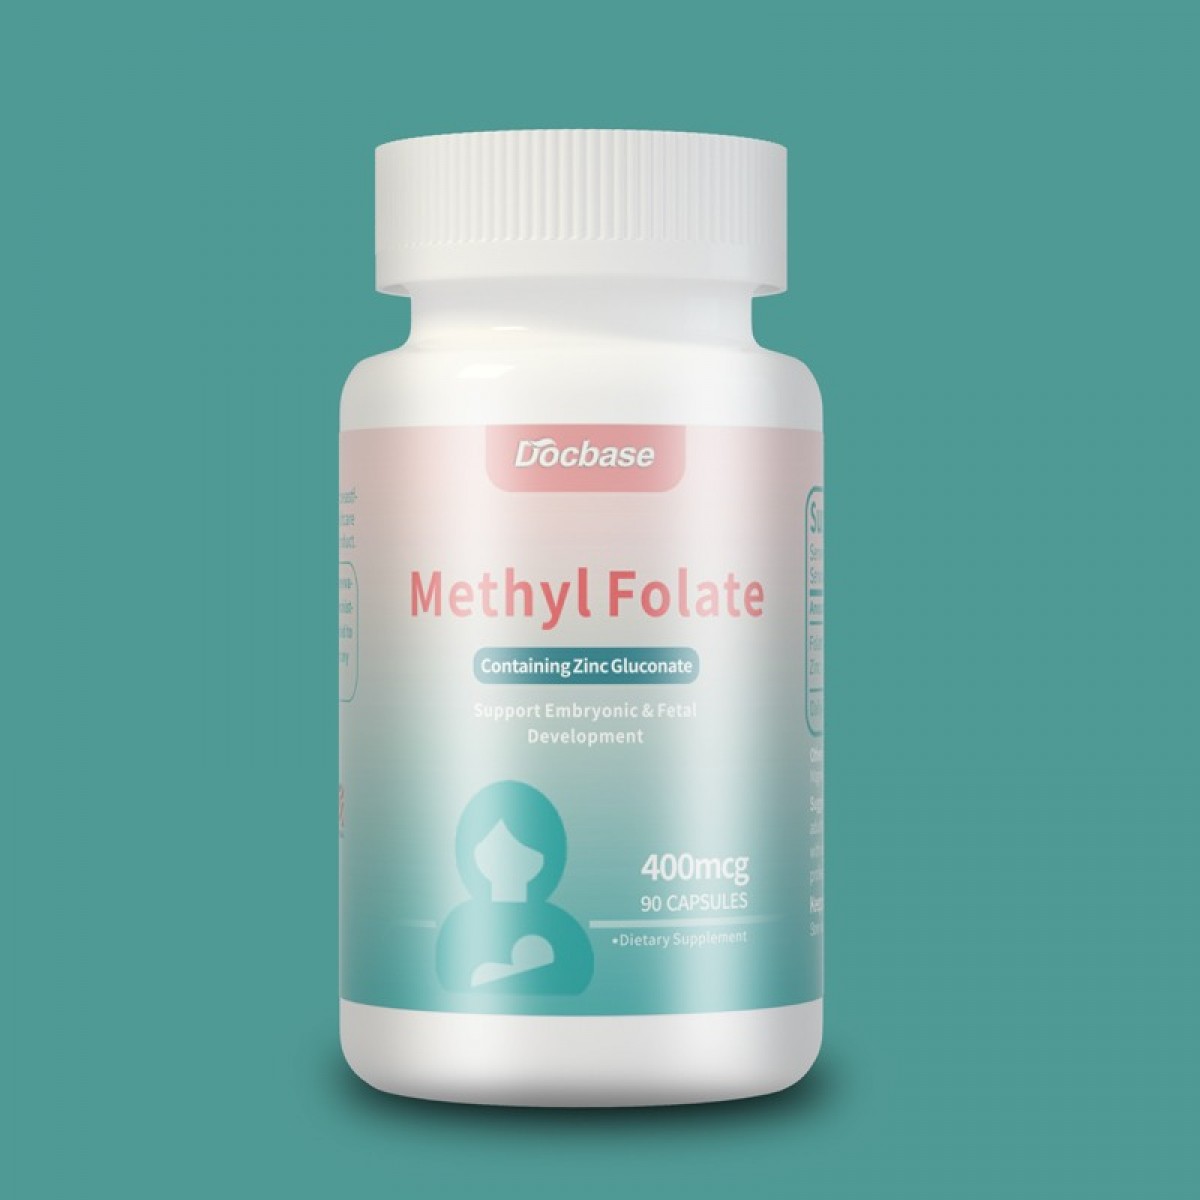 Docbase |Methyl Folate｜Active folic acid